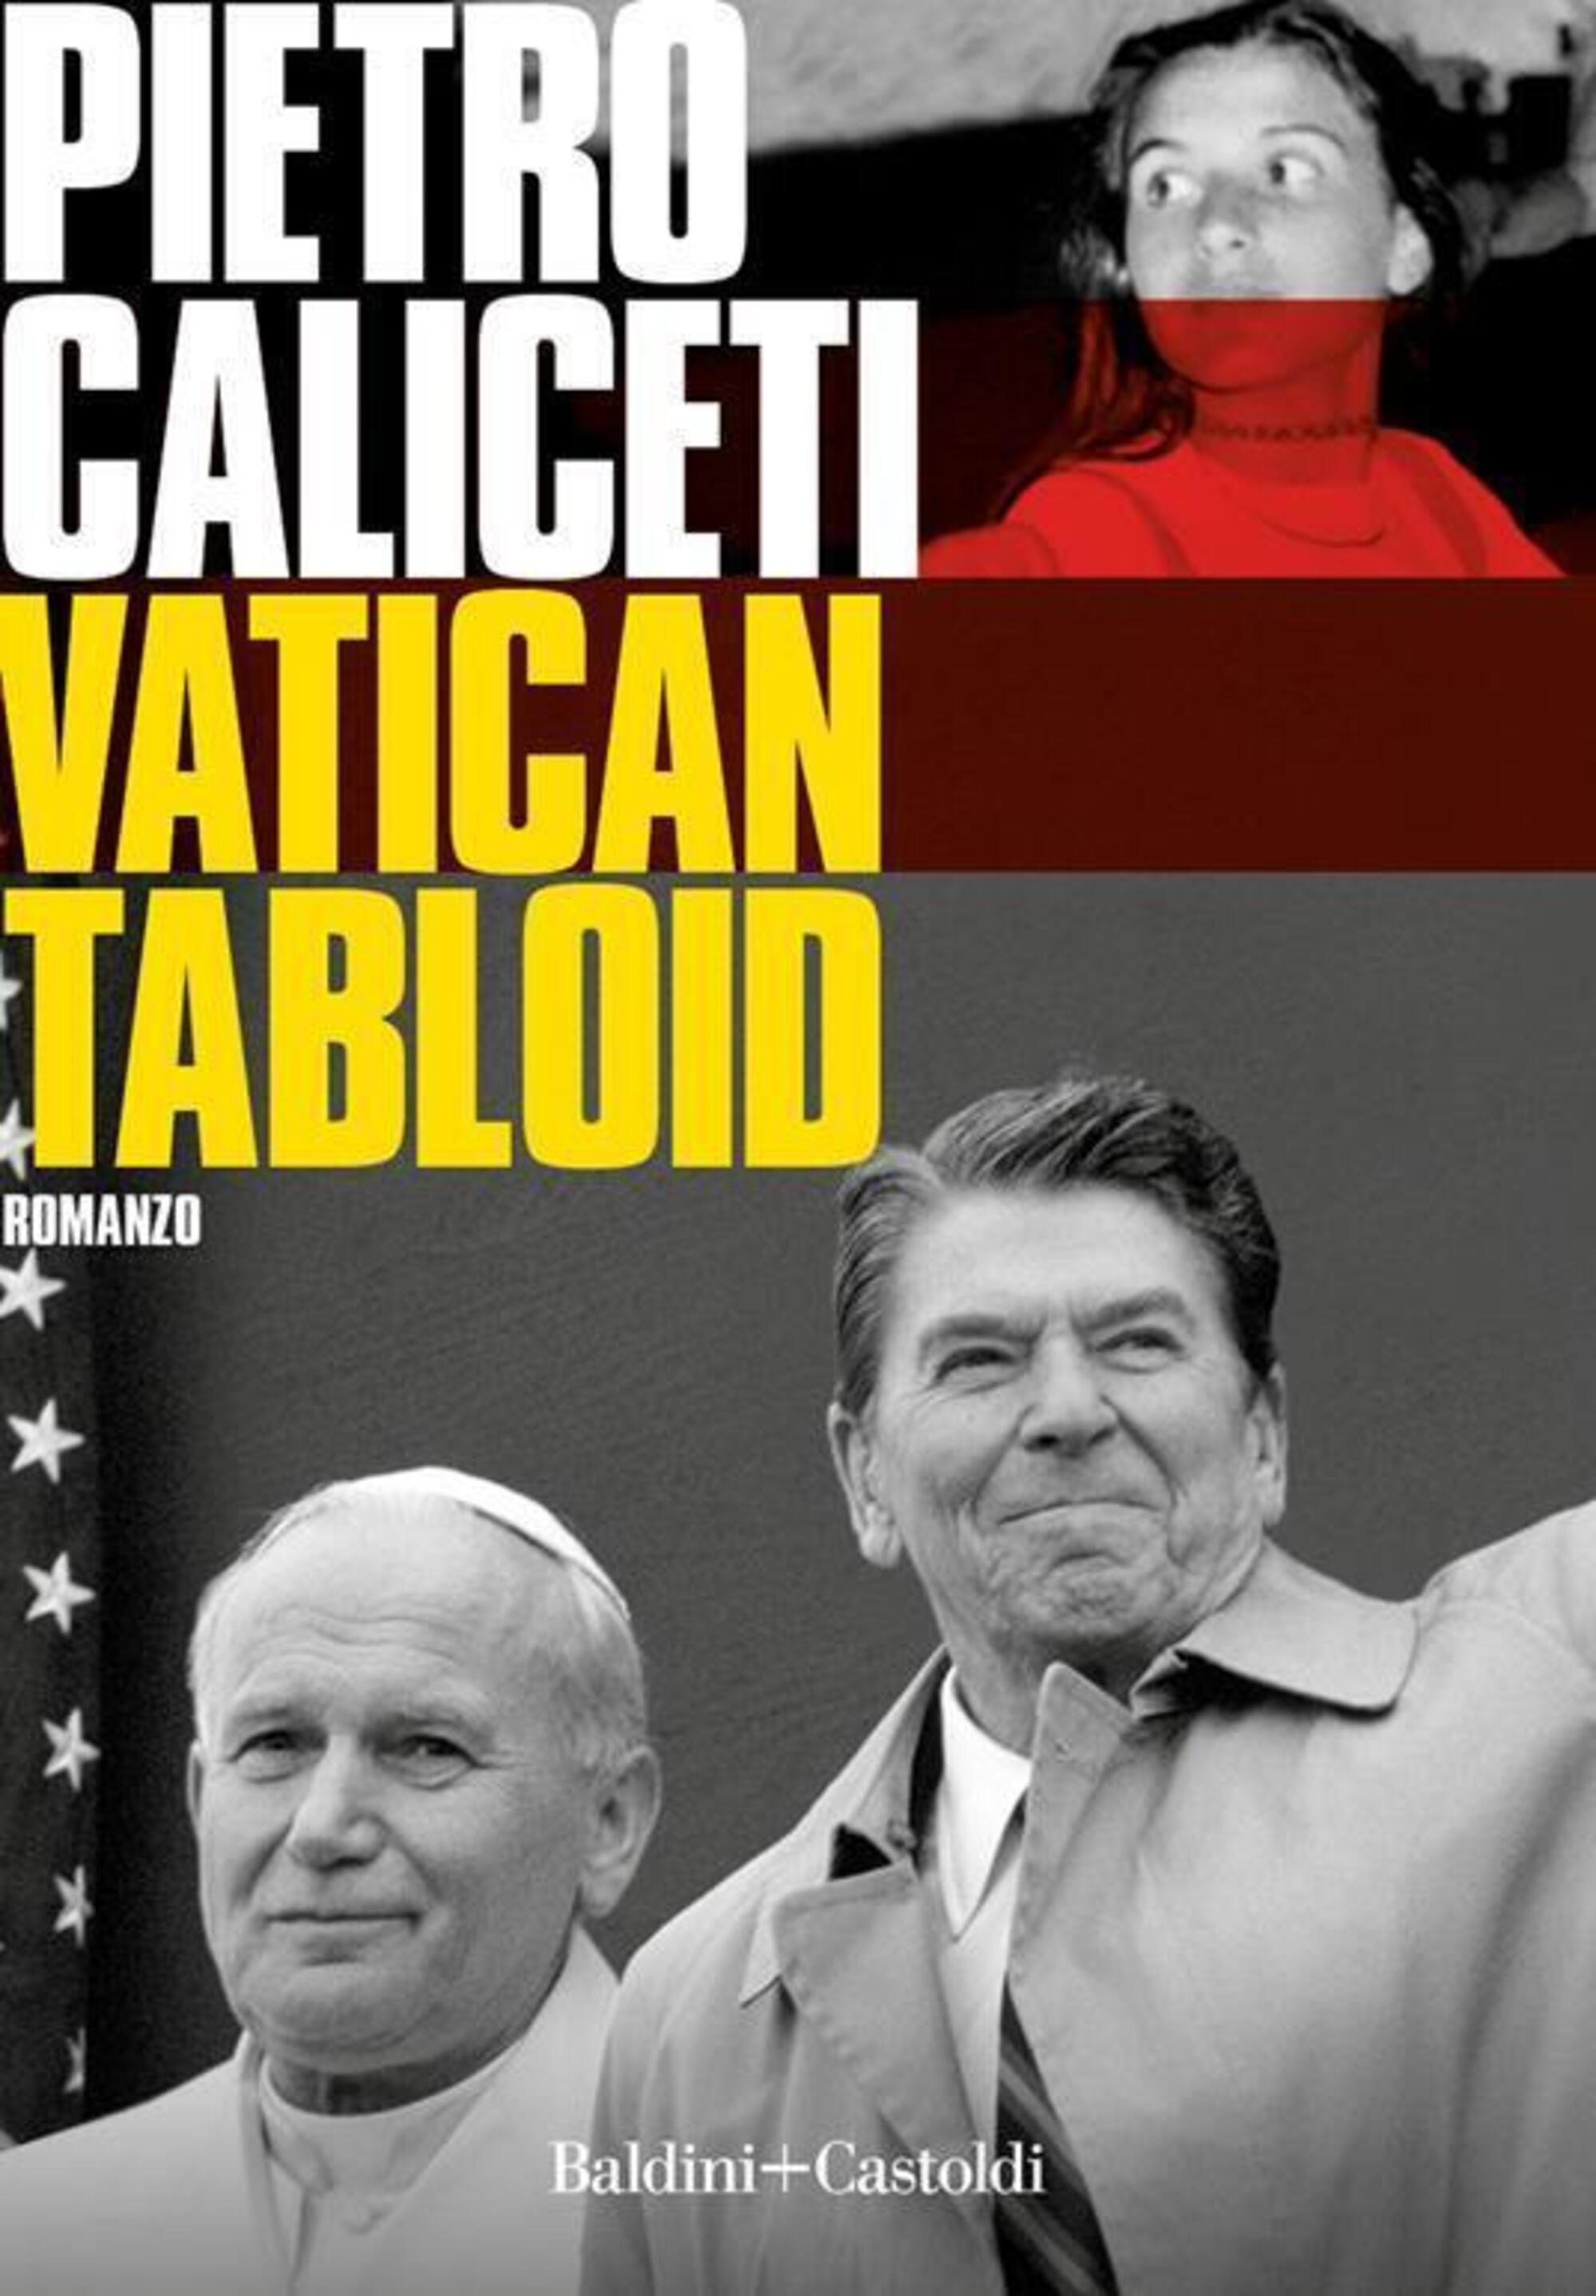 Vatican Tabloid, il nuovo libro di Pietro Caliceti